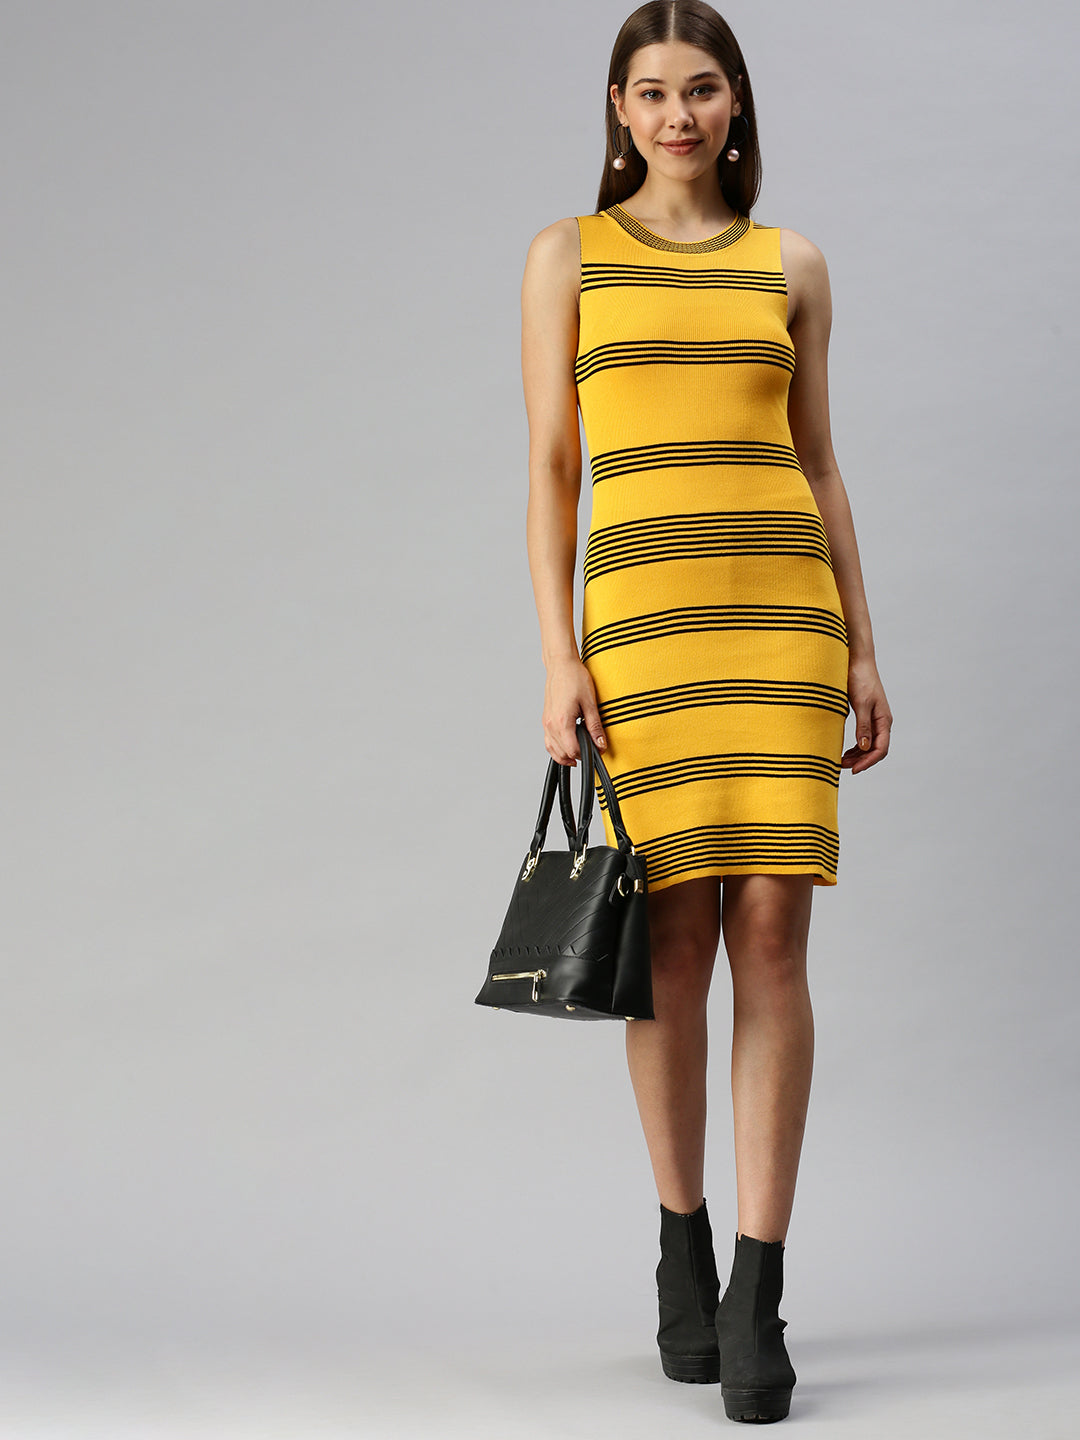 Women Striped Bodycon Yellow Dress